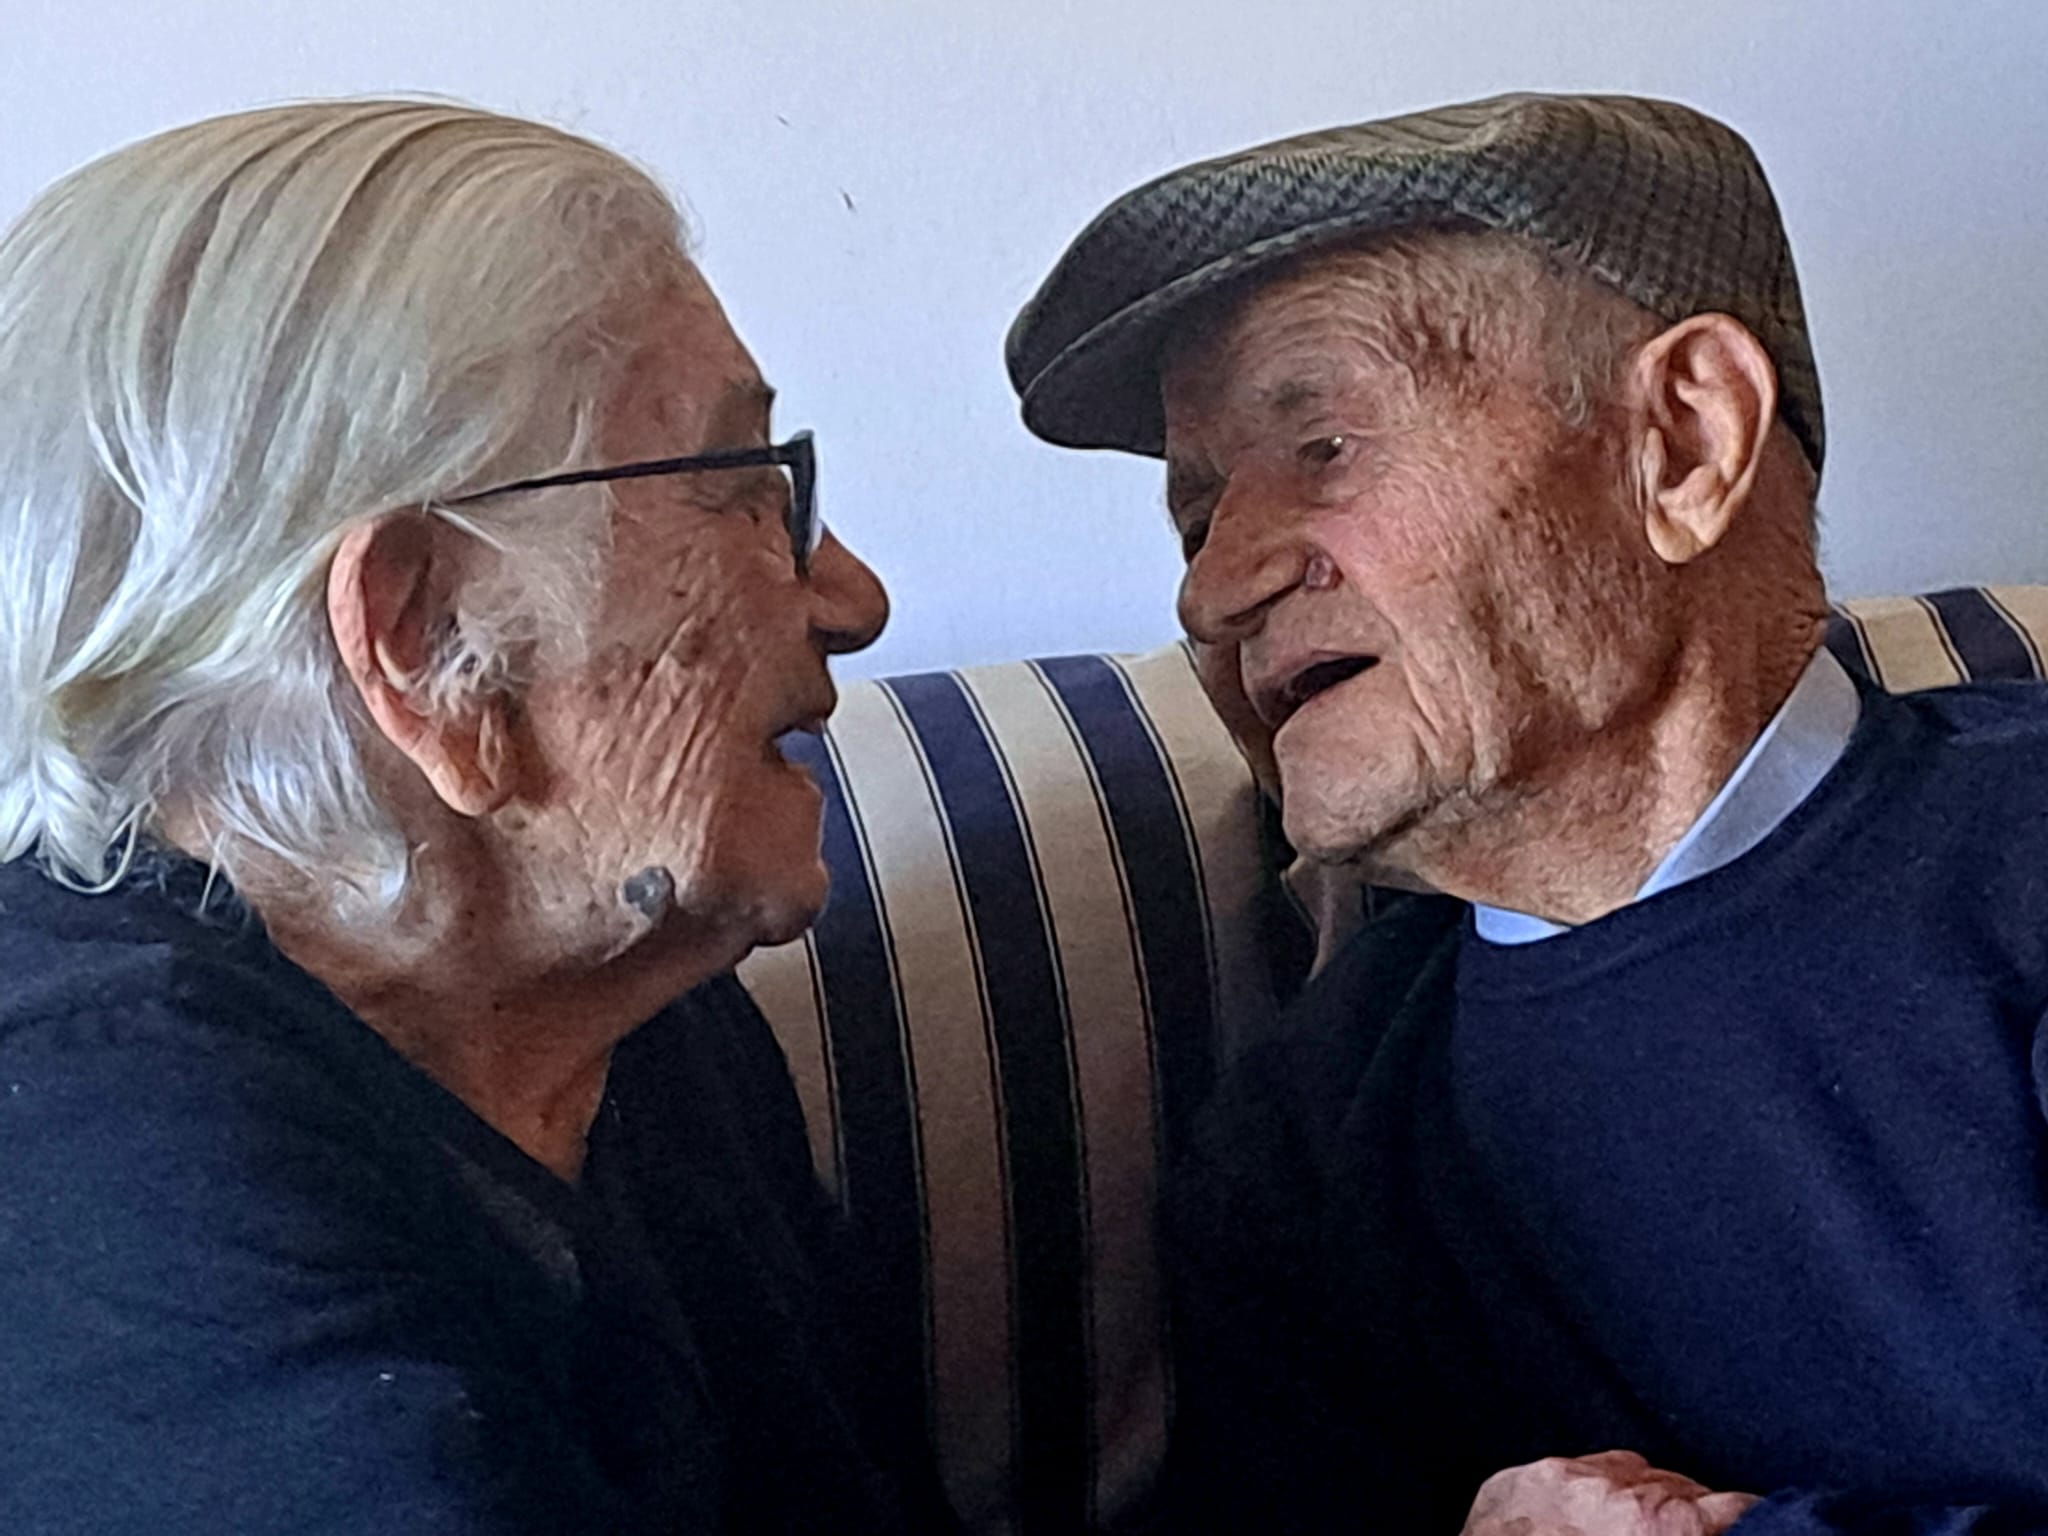 Tziu Costantino, 103 anni e Tzia Ignazia, 95: sempre innamorati dopo 66 anni di matrimonio